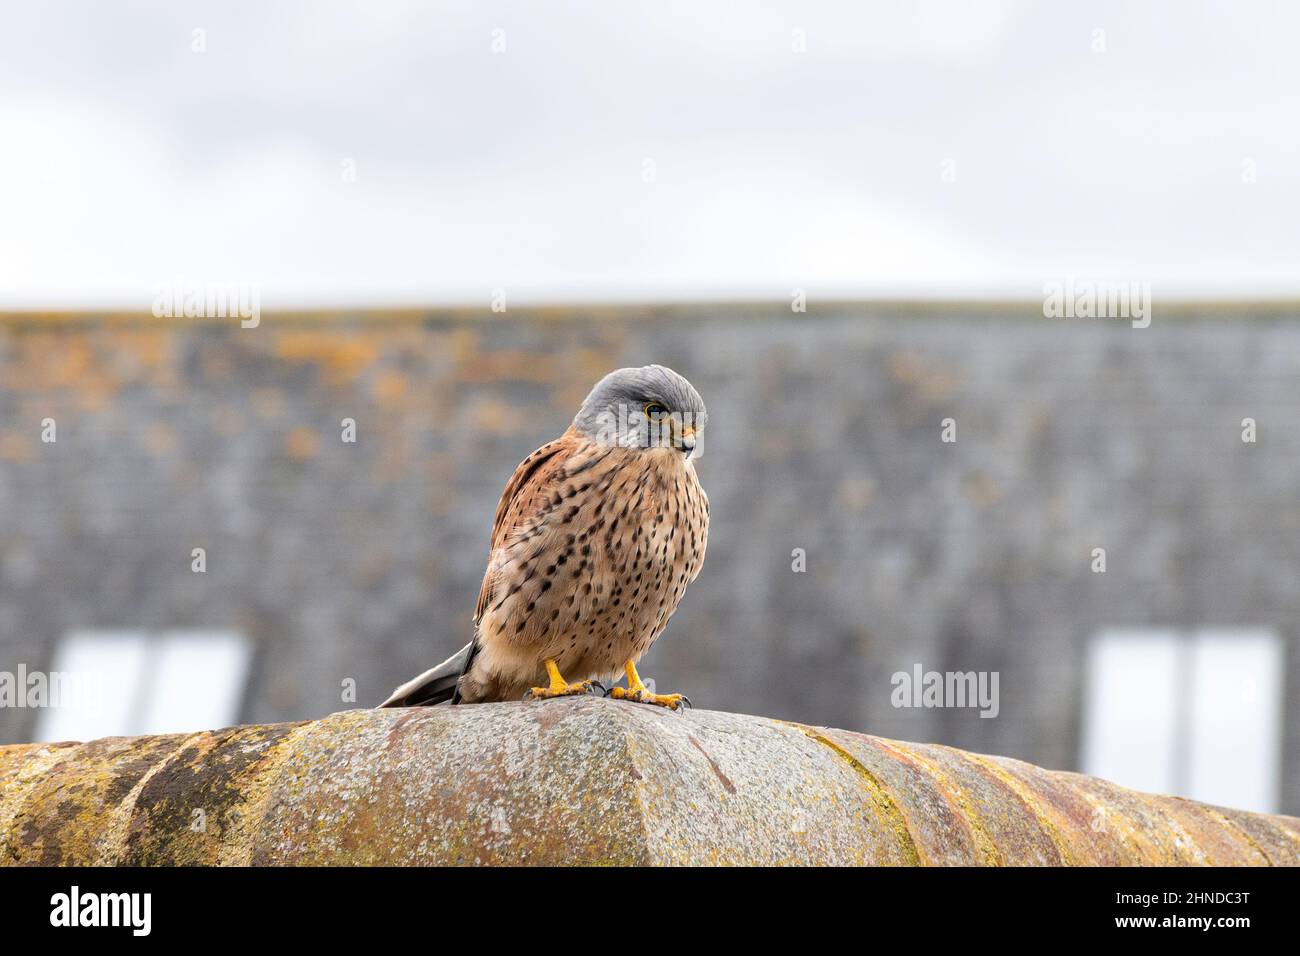 Kestrel (Falco tinnunculus), oiseau mâle perché sur un mur, Angleterre, Royaume-Uni. Faune urbaine. Banque D'Images